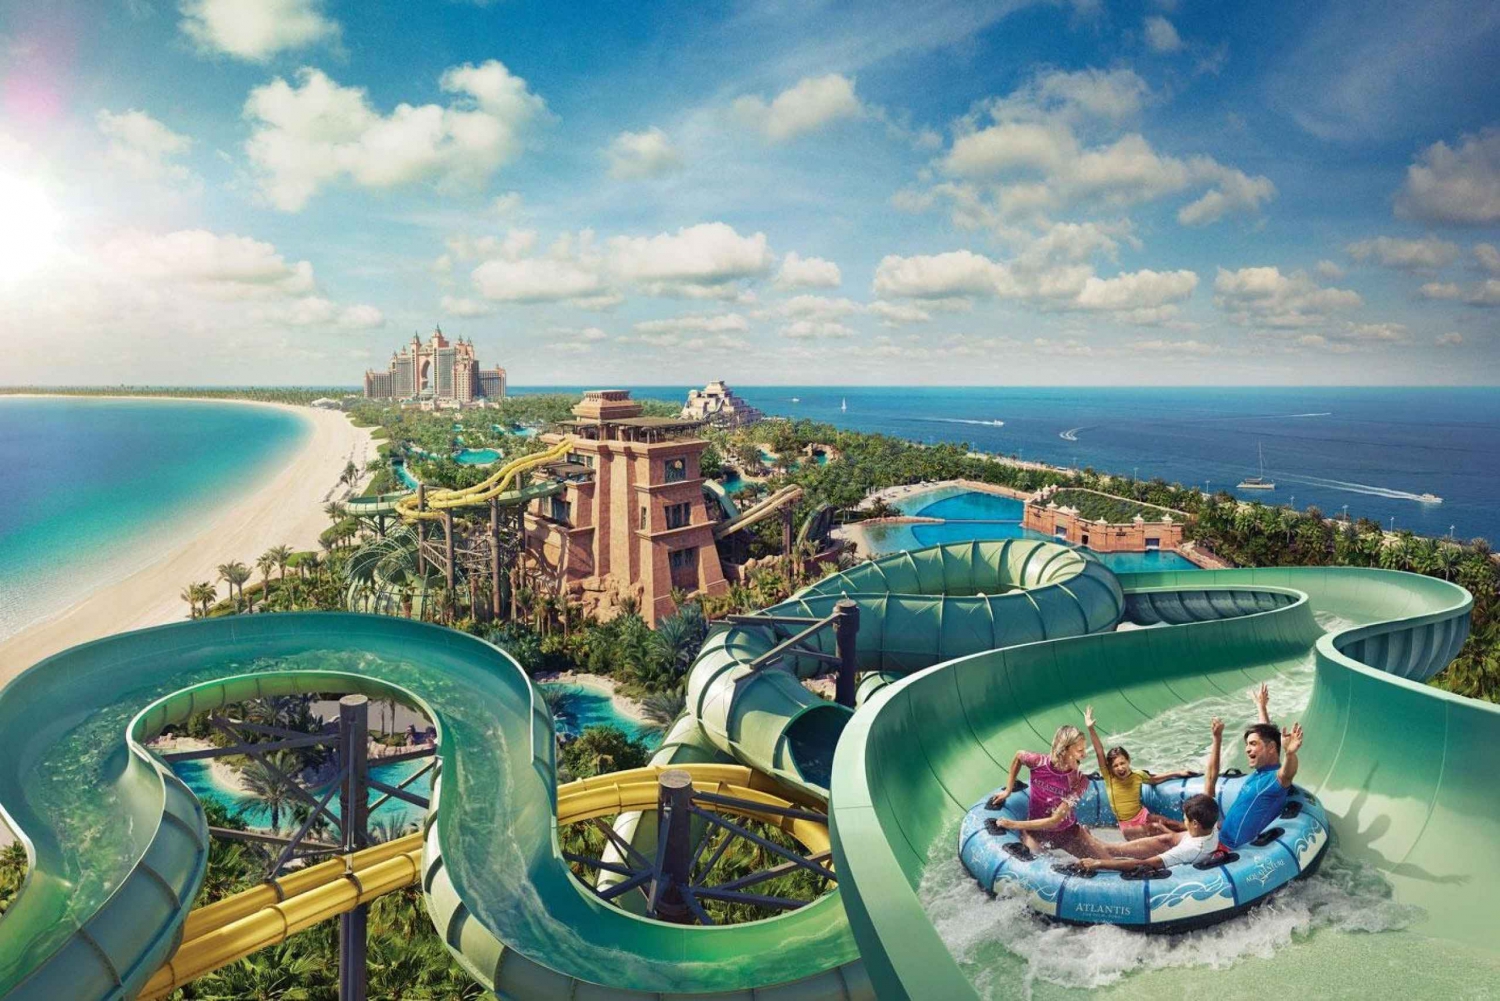 Dubai: Atlantis Aquaventure toegangsbewijs met transfers